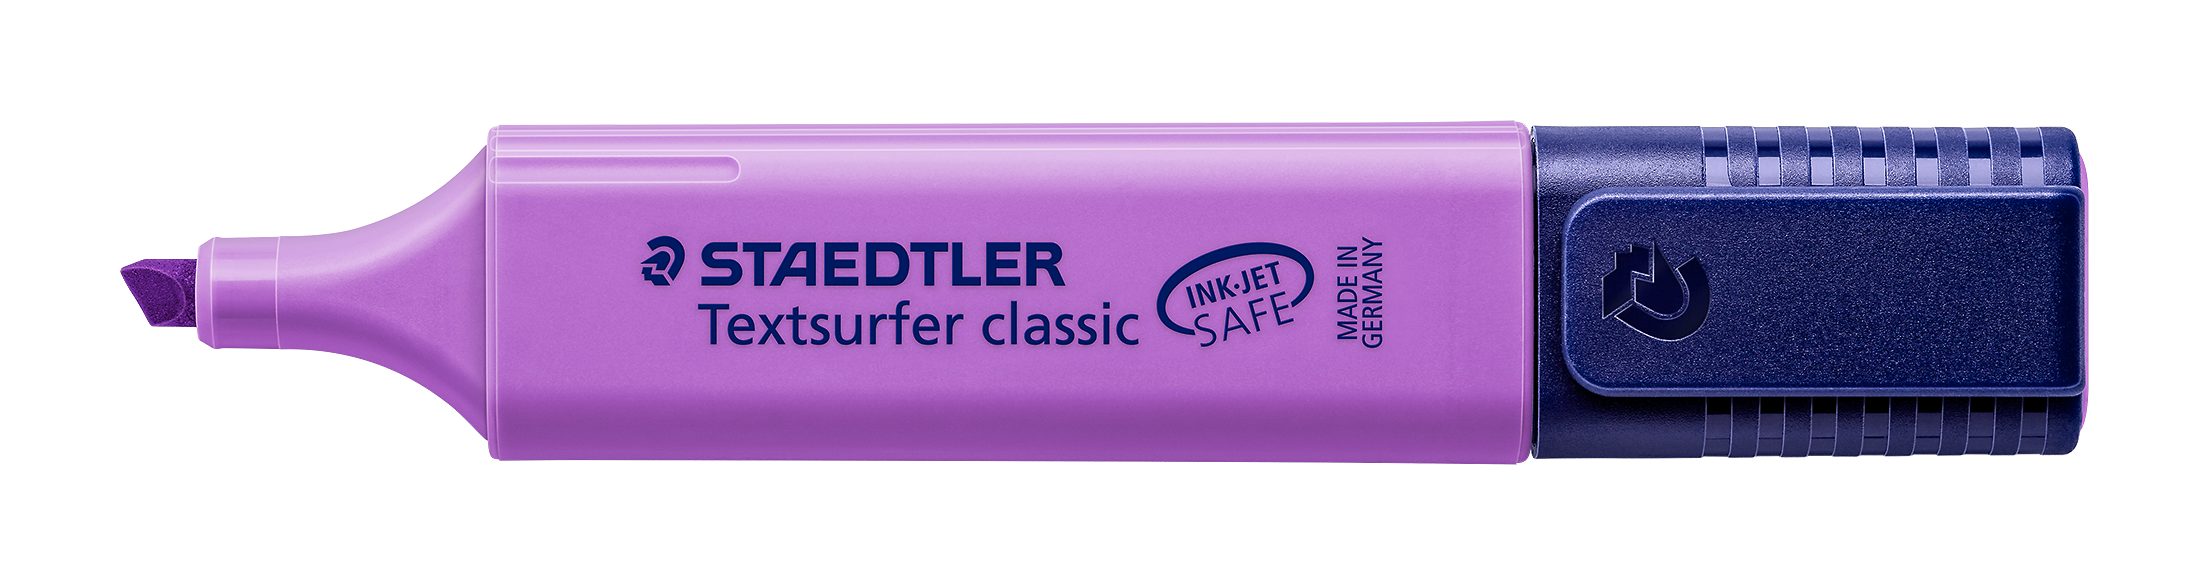 STAEDTLER Marker Staedtler Textsurfer classic violett 364-6 Leuchtstift lila, INK JET SAFE